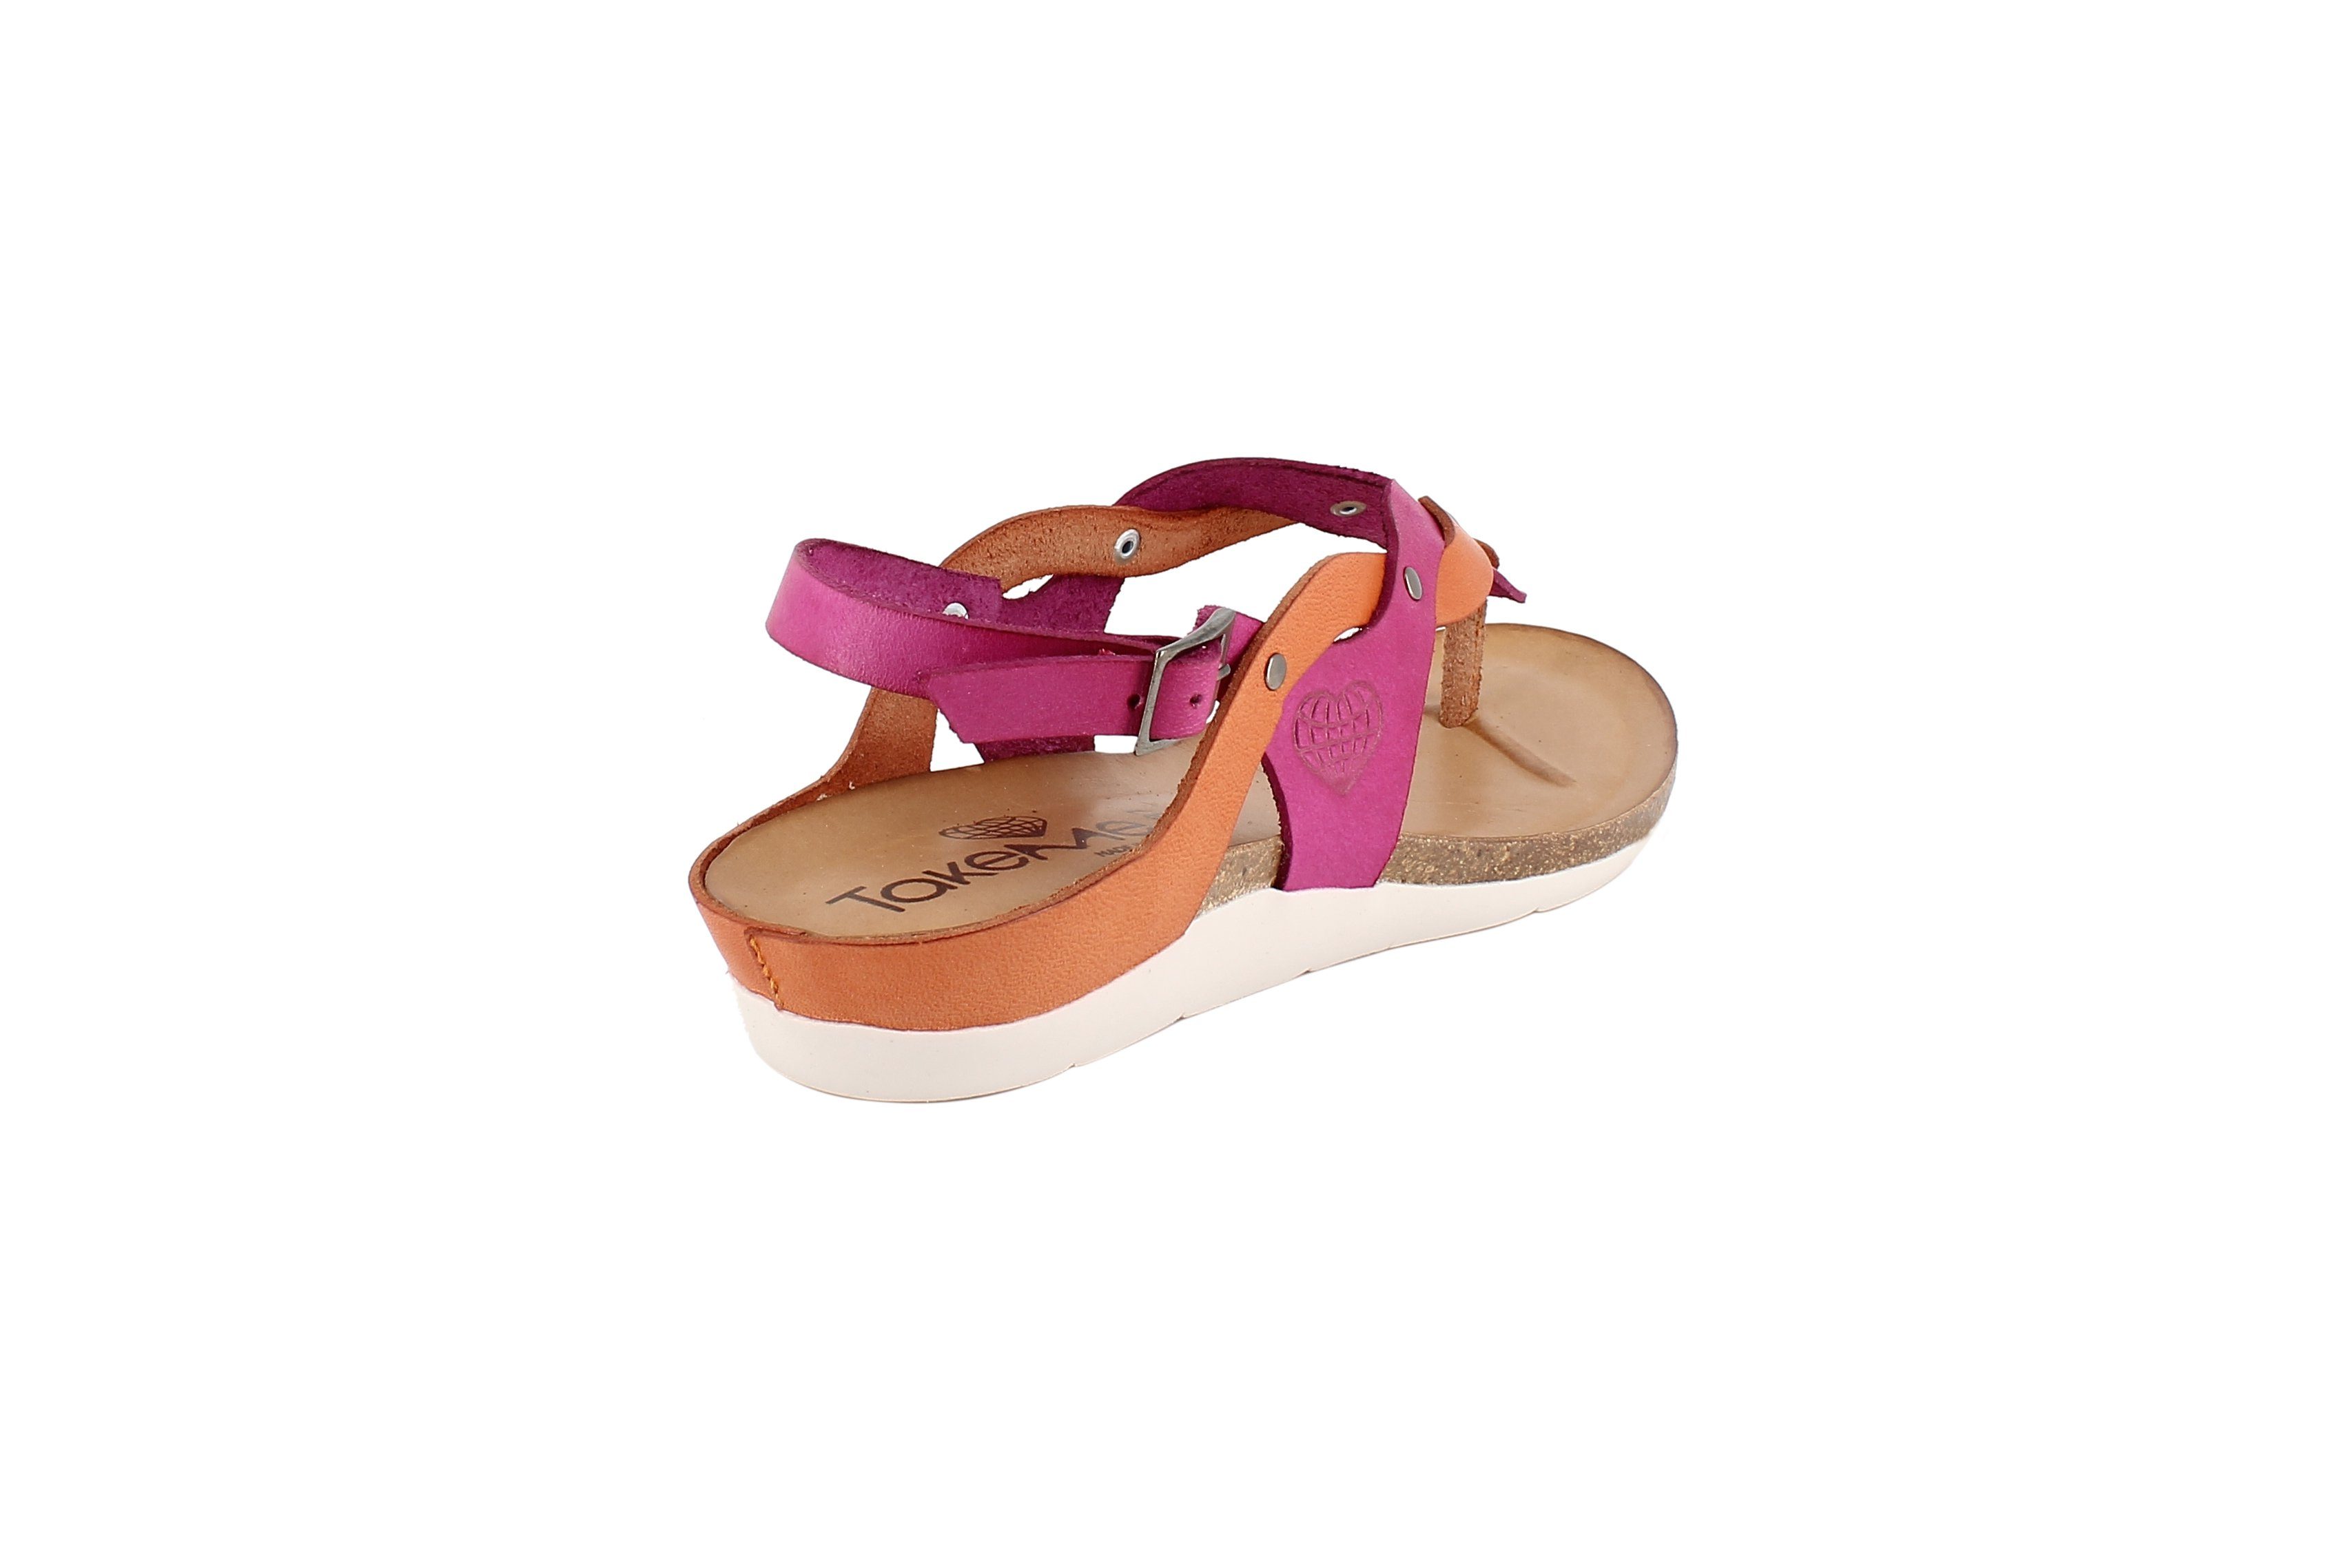 Sandale TakeMe fuchsia/orange Shoes Leder Damen Zehentrenner Zehentrenner